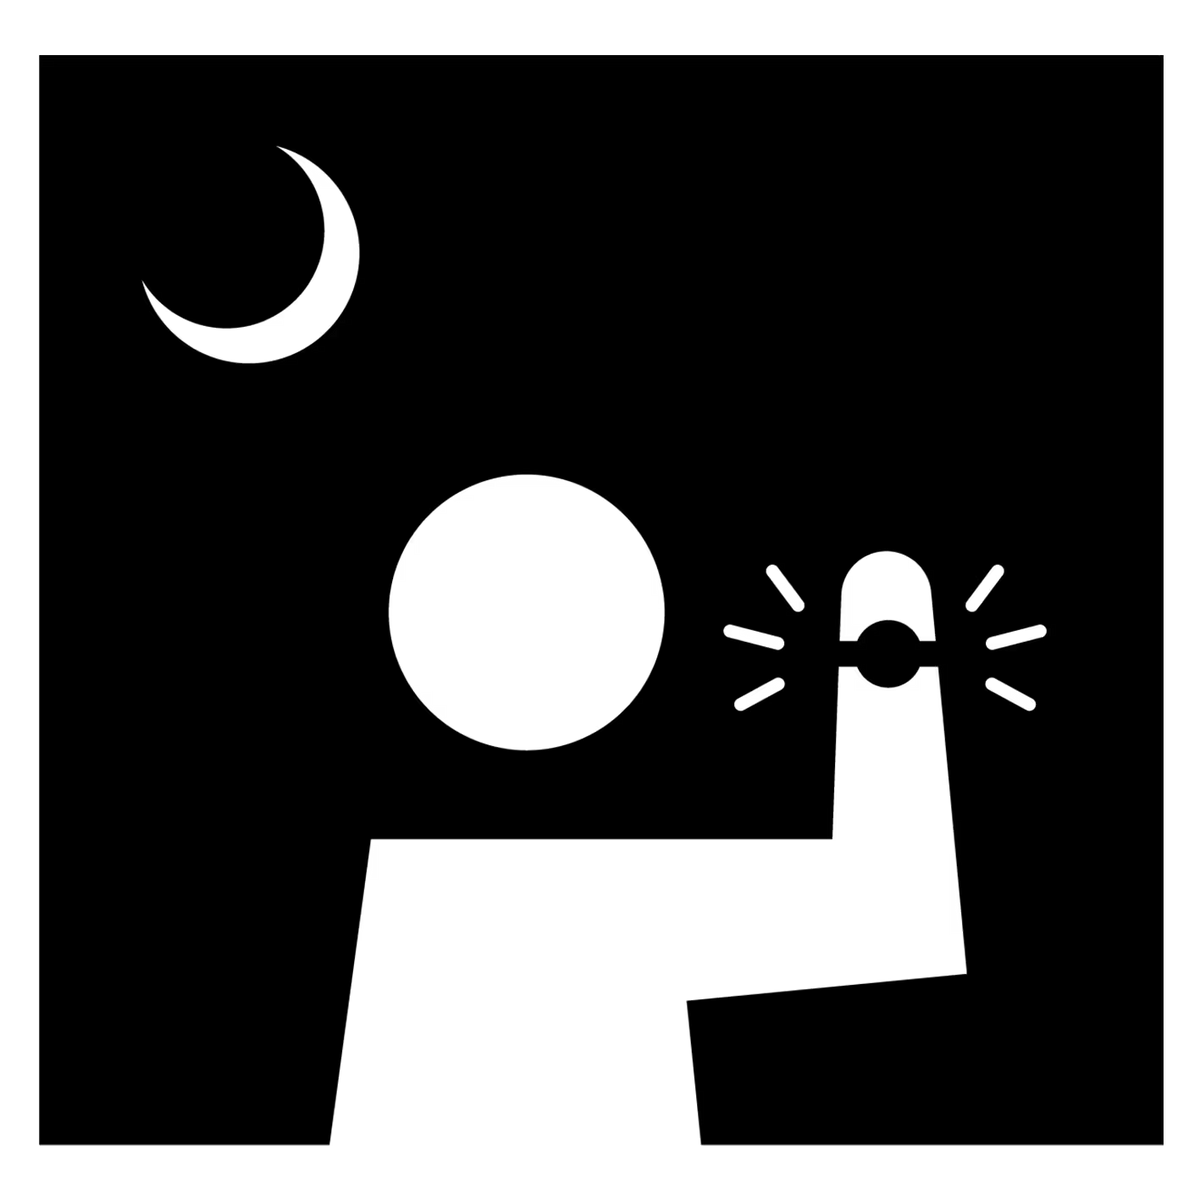 dark logo casio